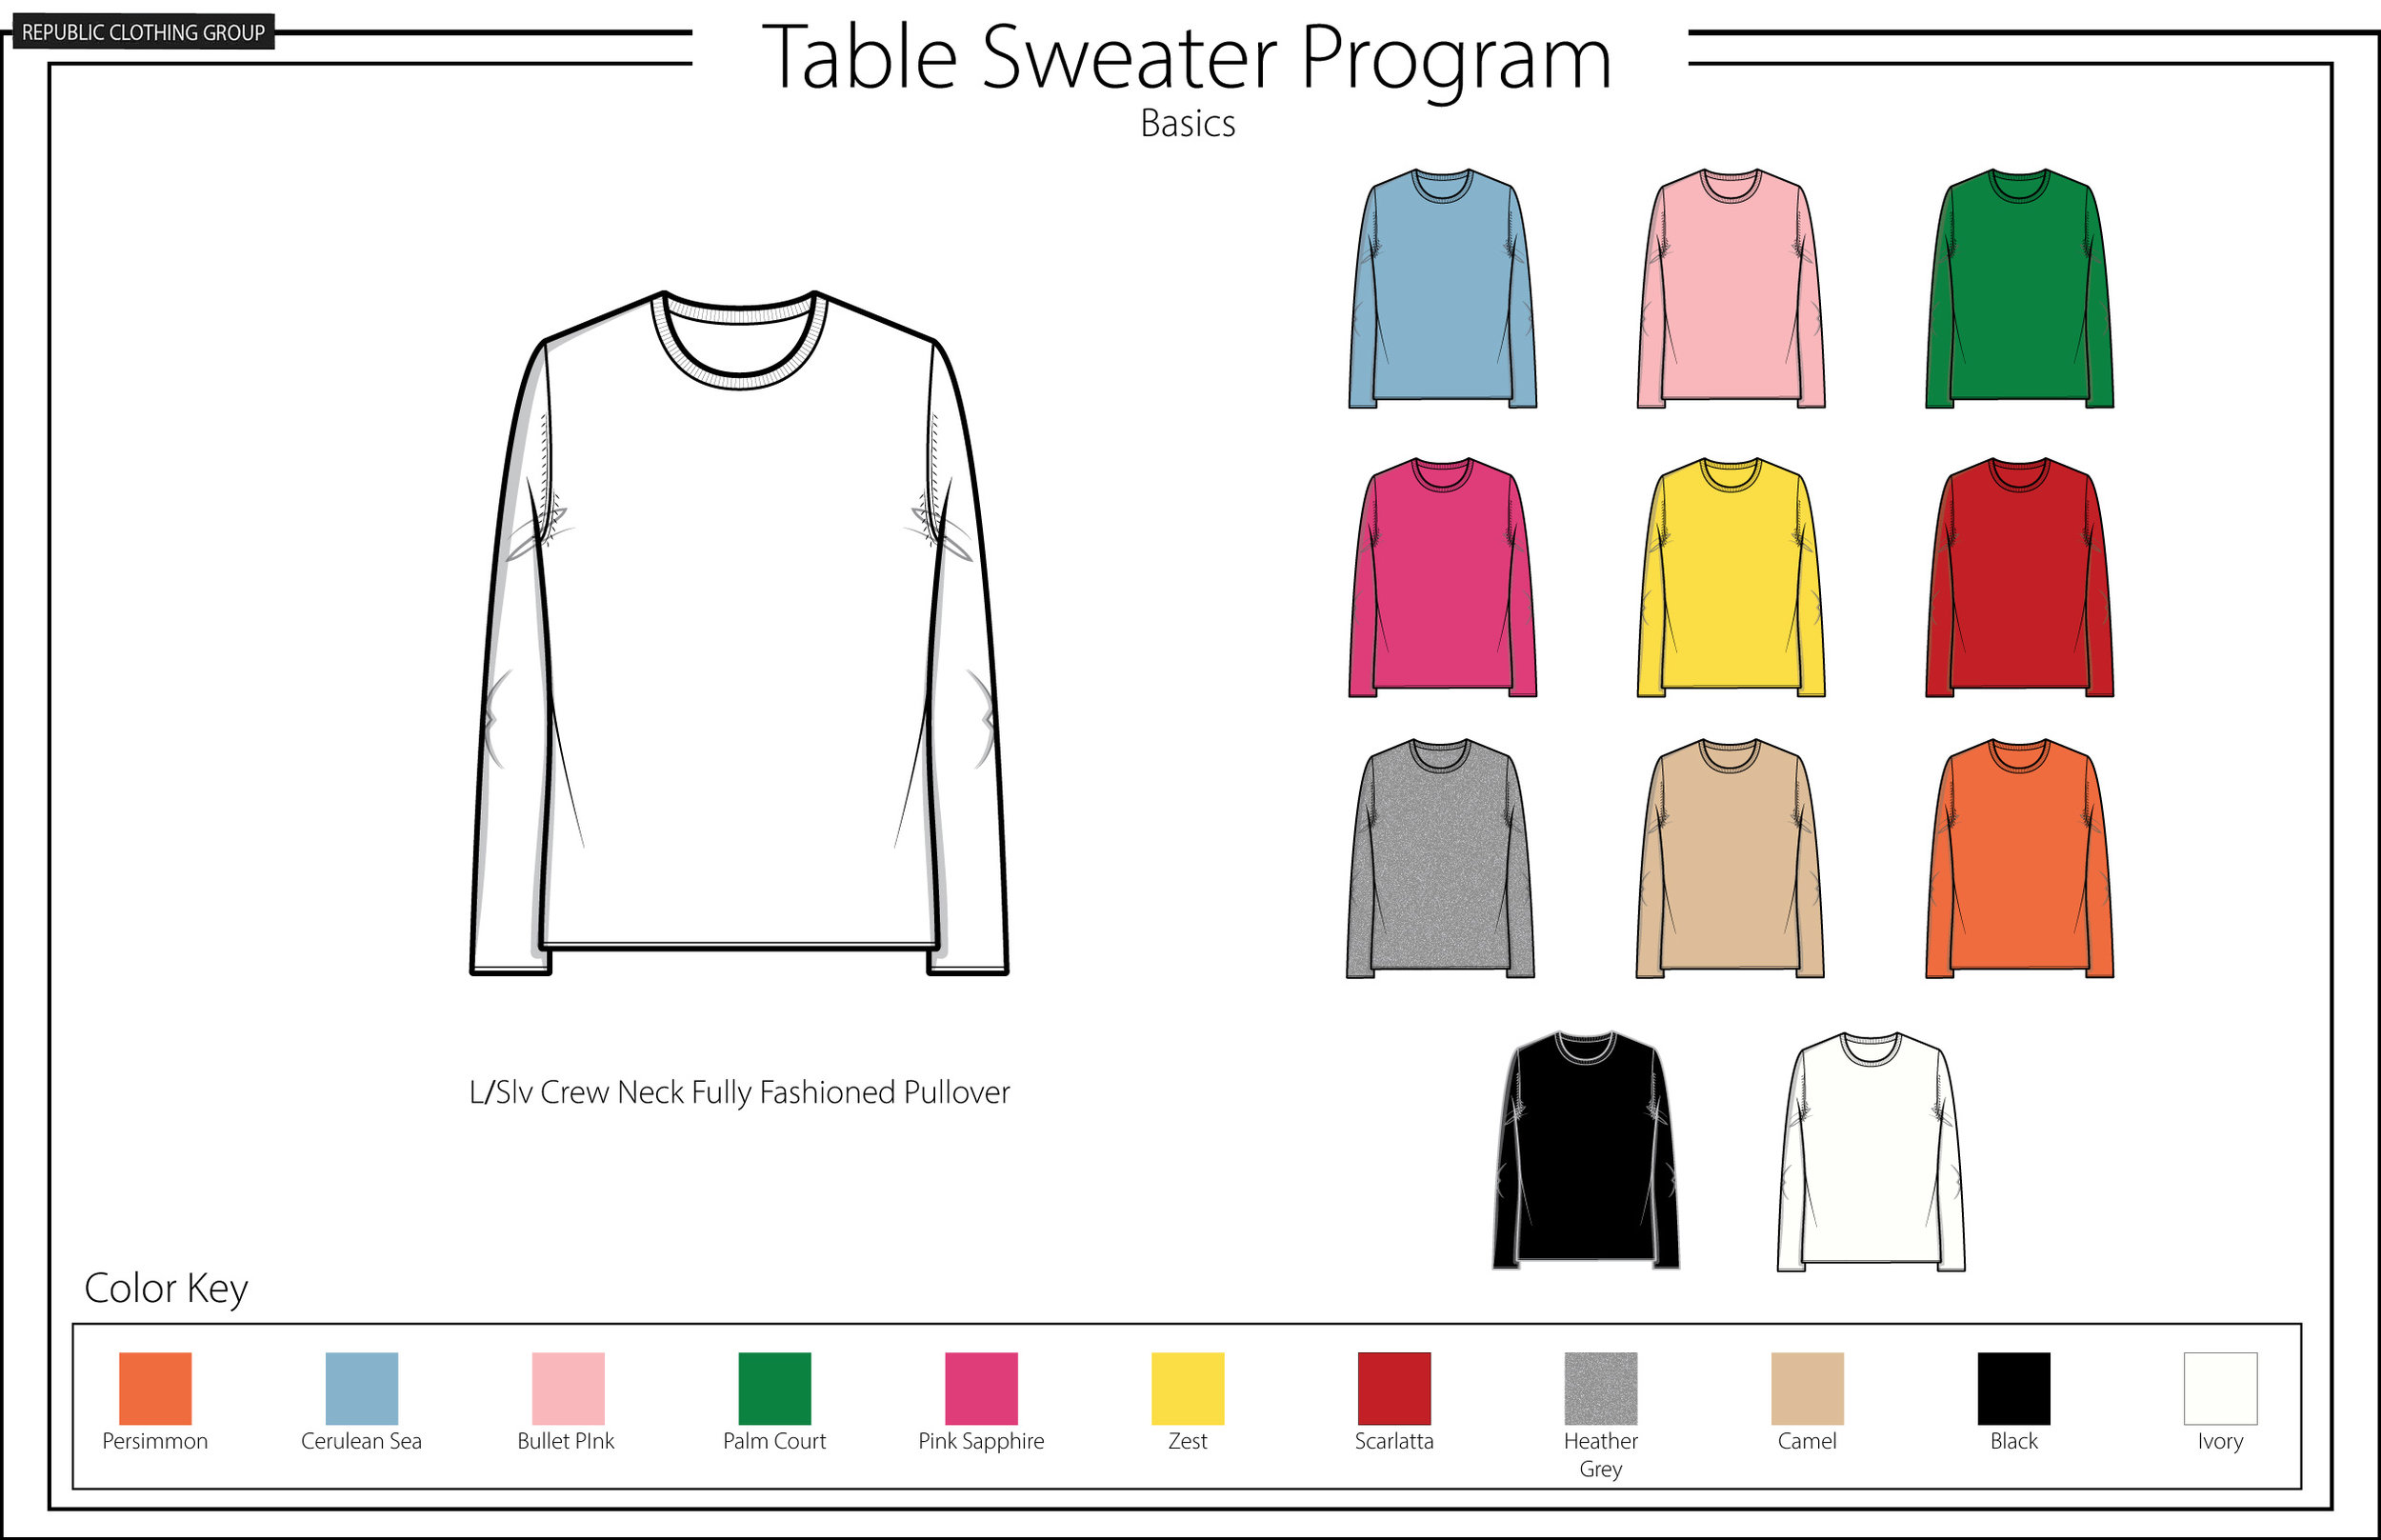 Table Sweater Program Basics.jpg